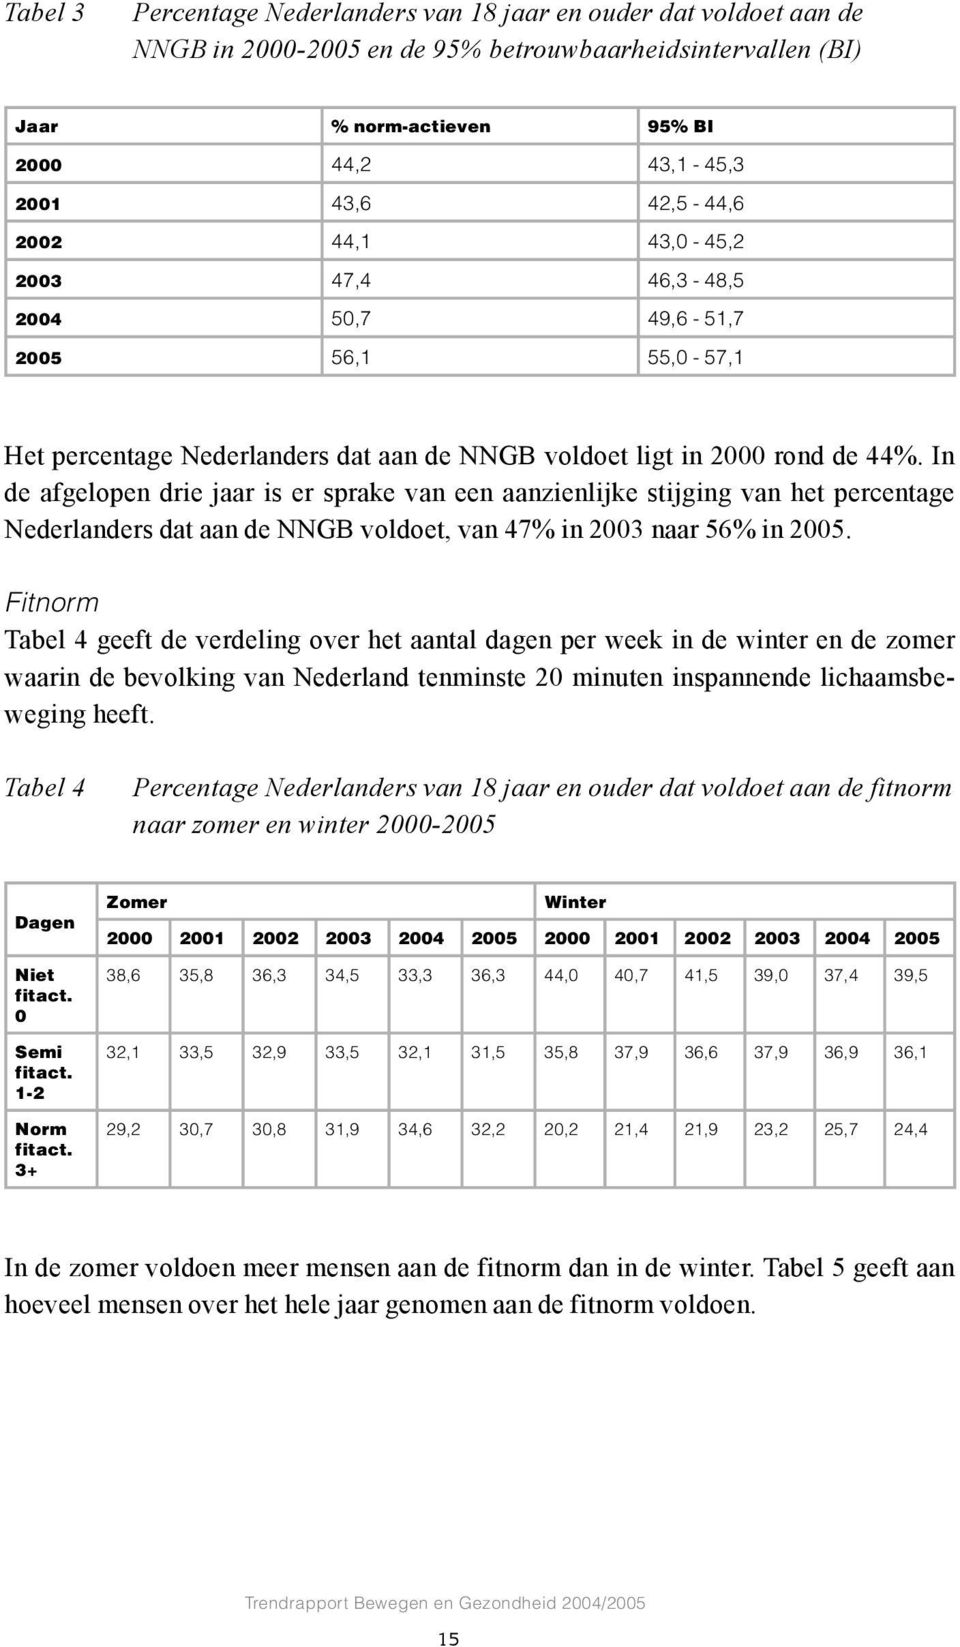 In de afgelopen drie jaar is er sprake van een aanzienlijke stijging van het percentage Nederlanders dat aan de NNGB voldoet, van 47% in 2003 naar 56% in 2005.